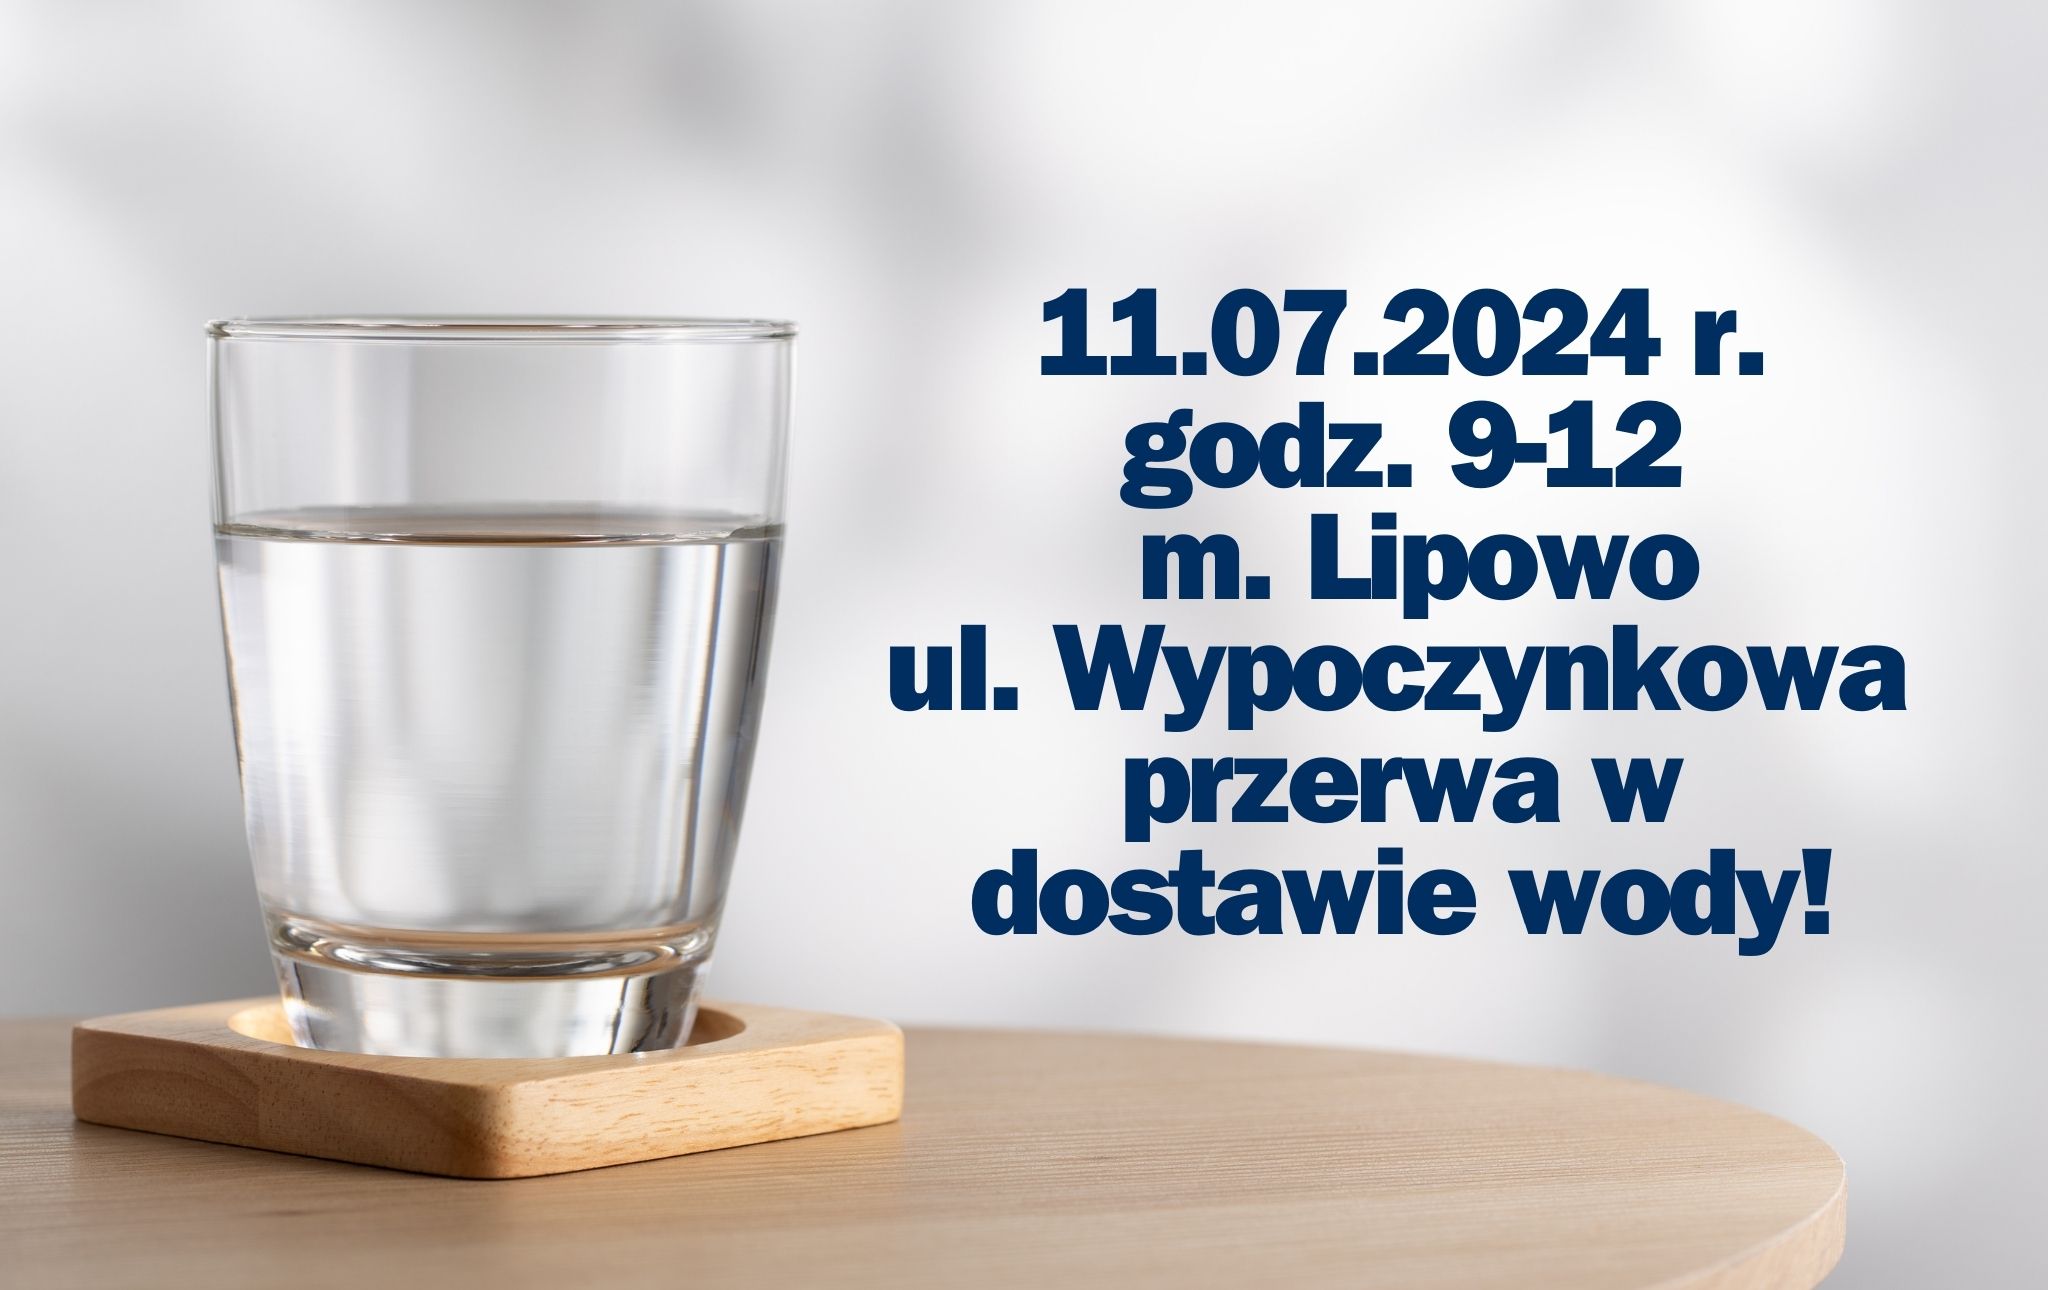 11.07.2024 r. godz. 9-12 m. Lipowo ul. Wypoczynkowa przerwa w dostawie wody!